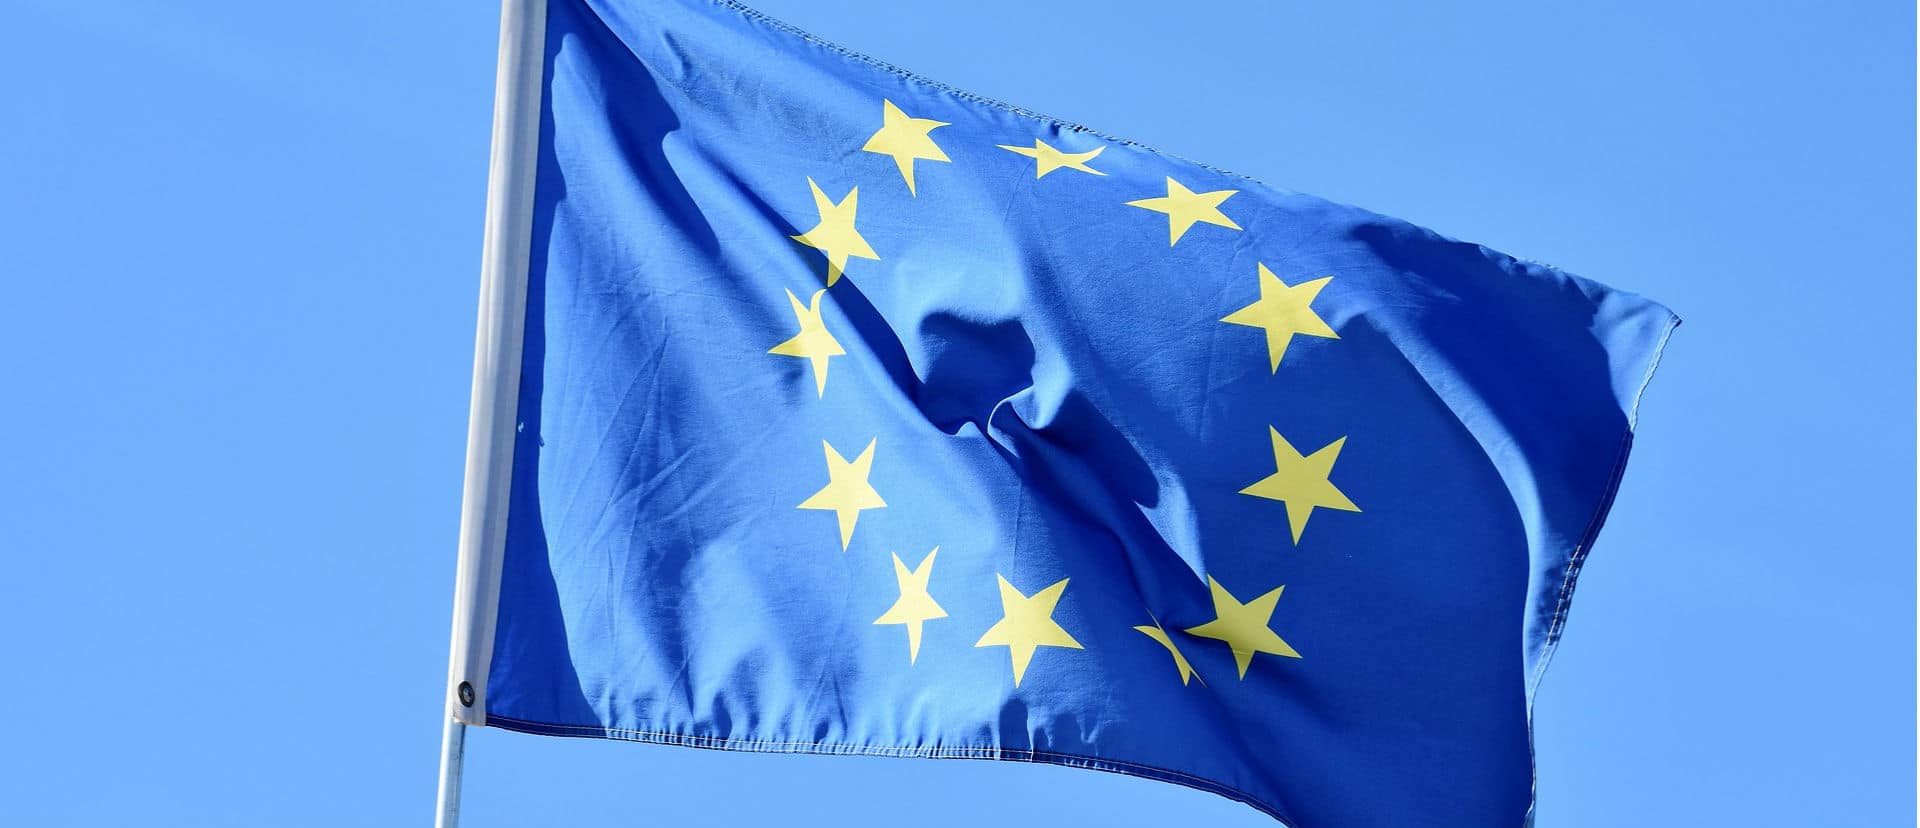 El próximo 9 de mayo la UE celebra el Día de Europa